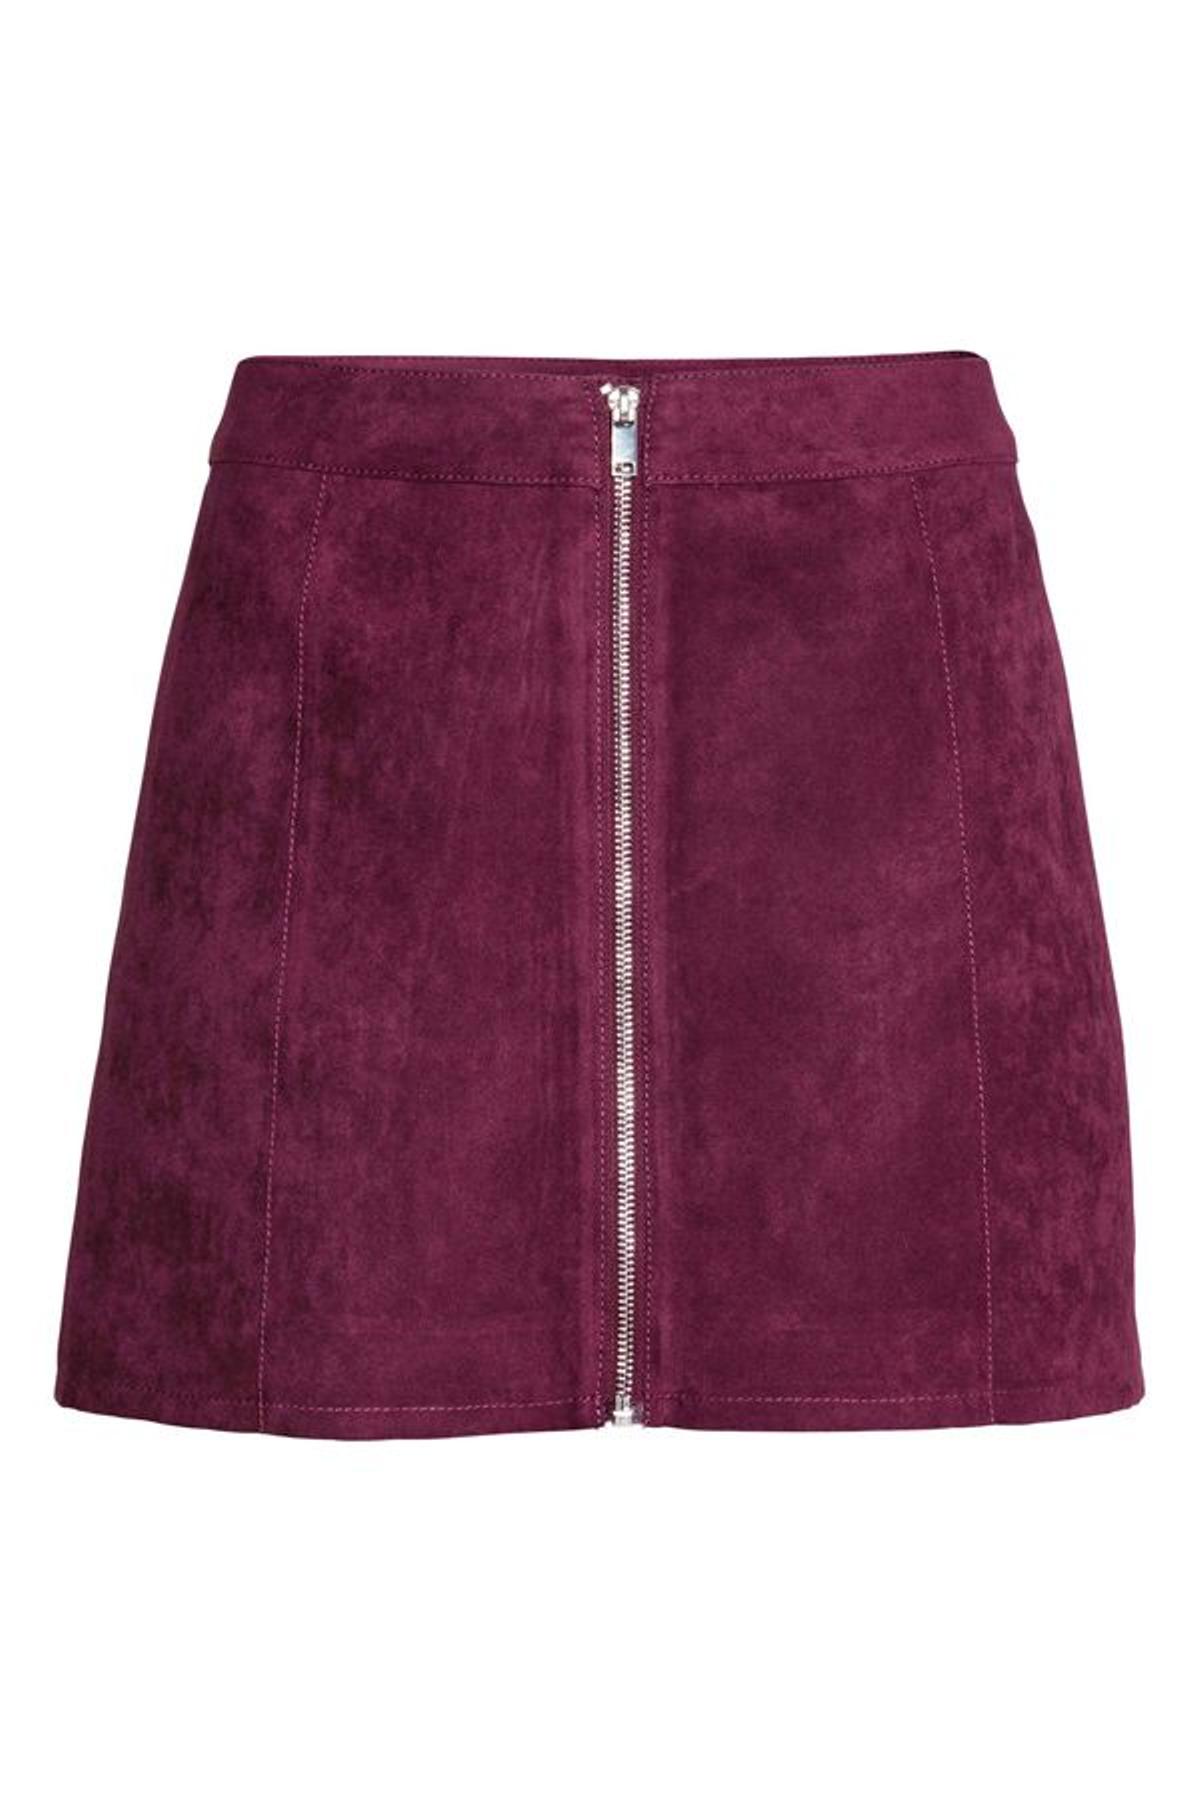 Imprescindibles de temporada en H&amp;M con descuentos: falda mini antelina